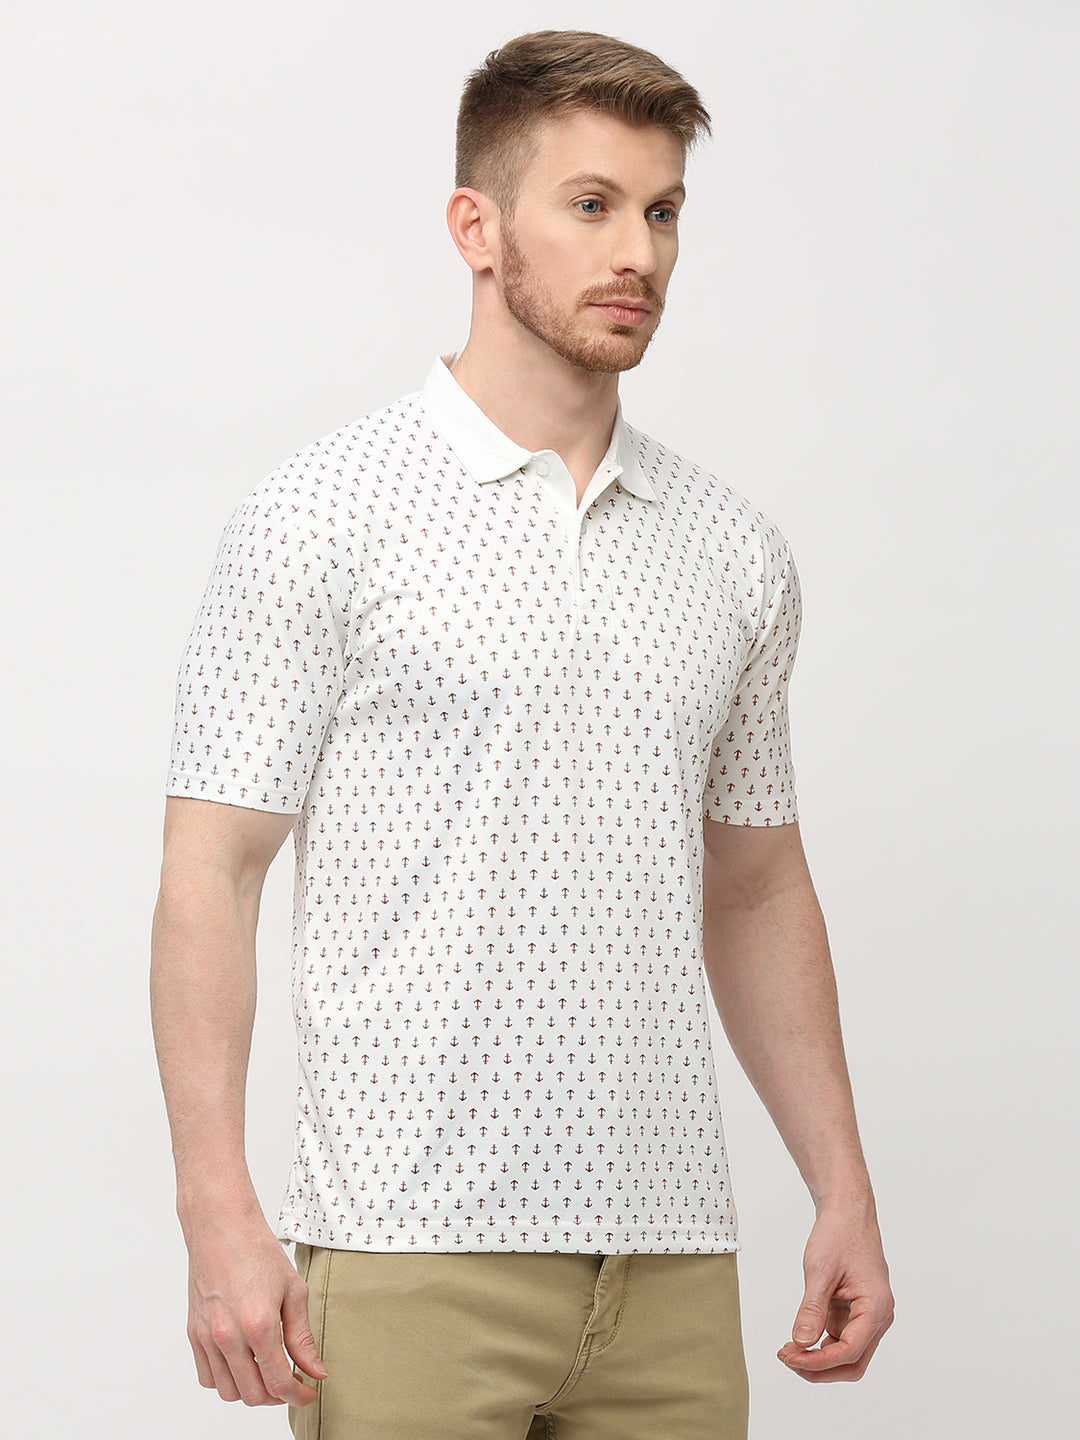 Polo T-shirt (Anchor Print) - Cream